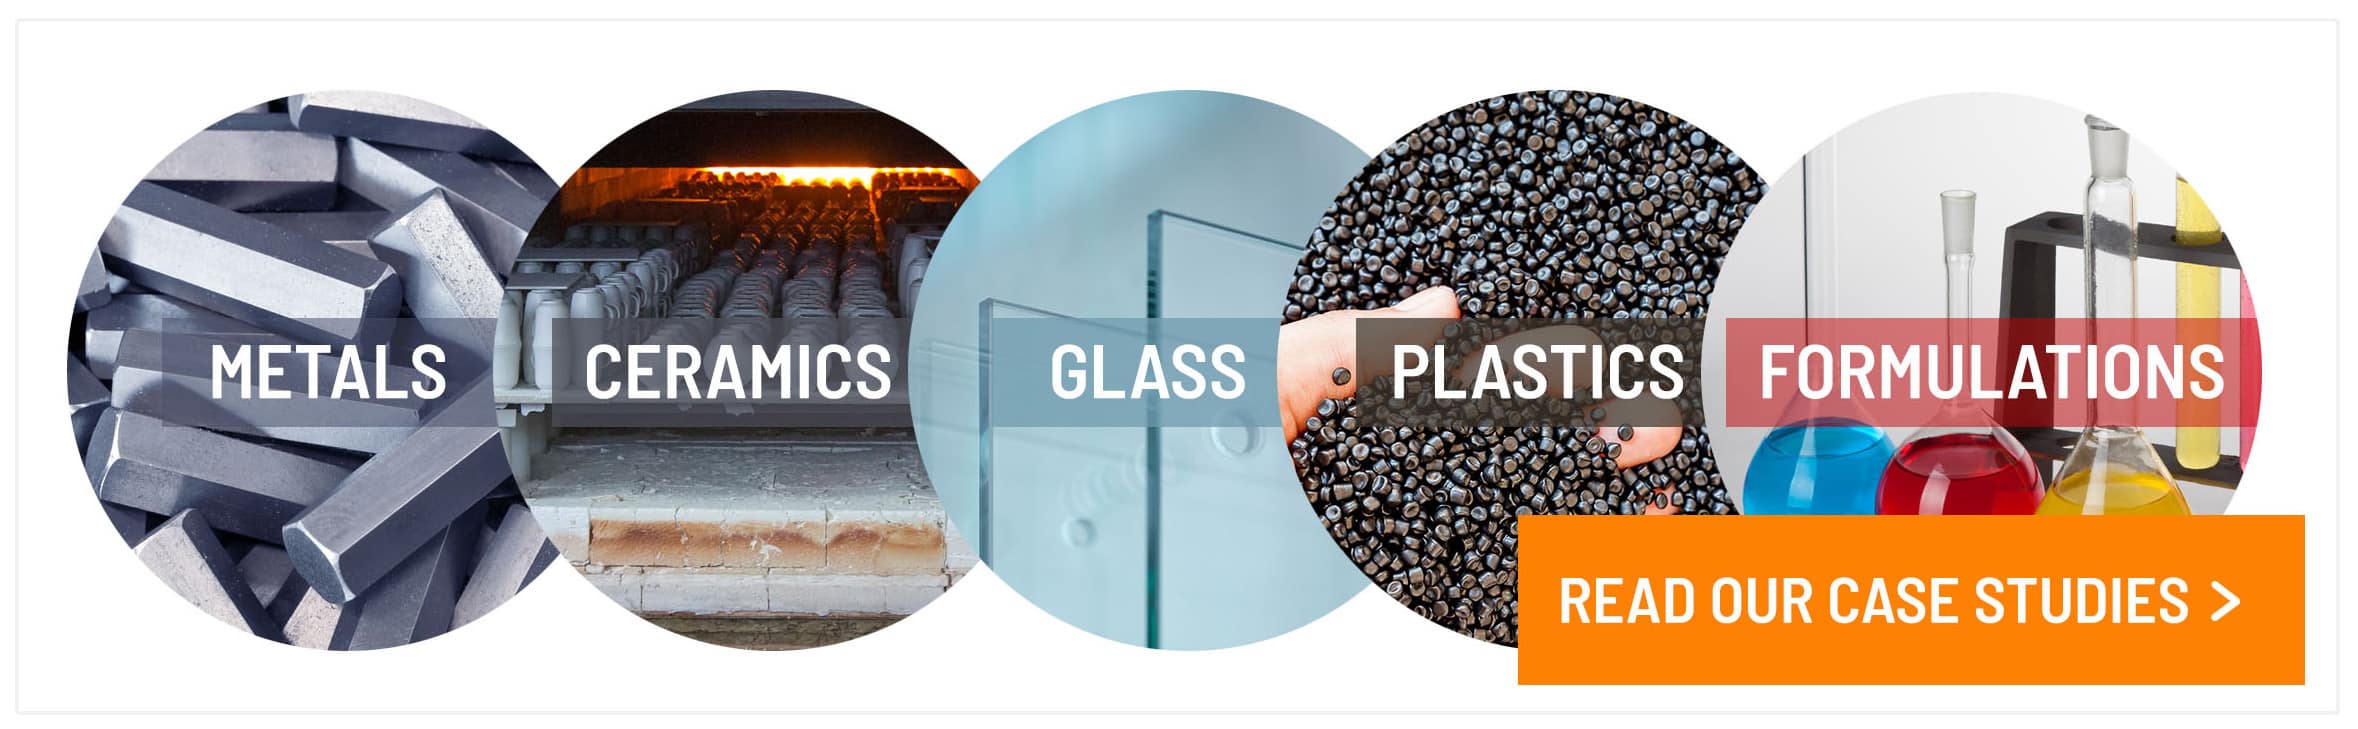 Case studies spanning material classes, Glass, Plastics, Formulations, Ceramics and Metals